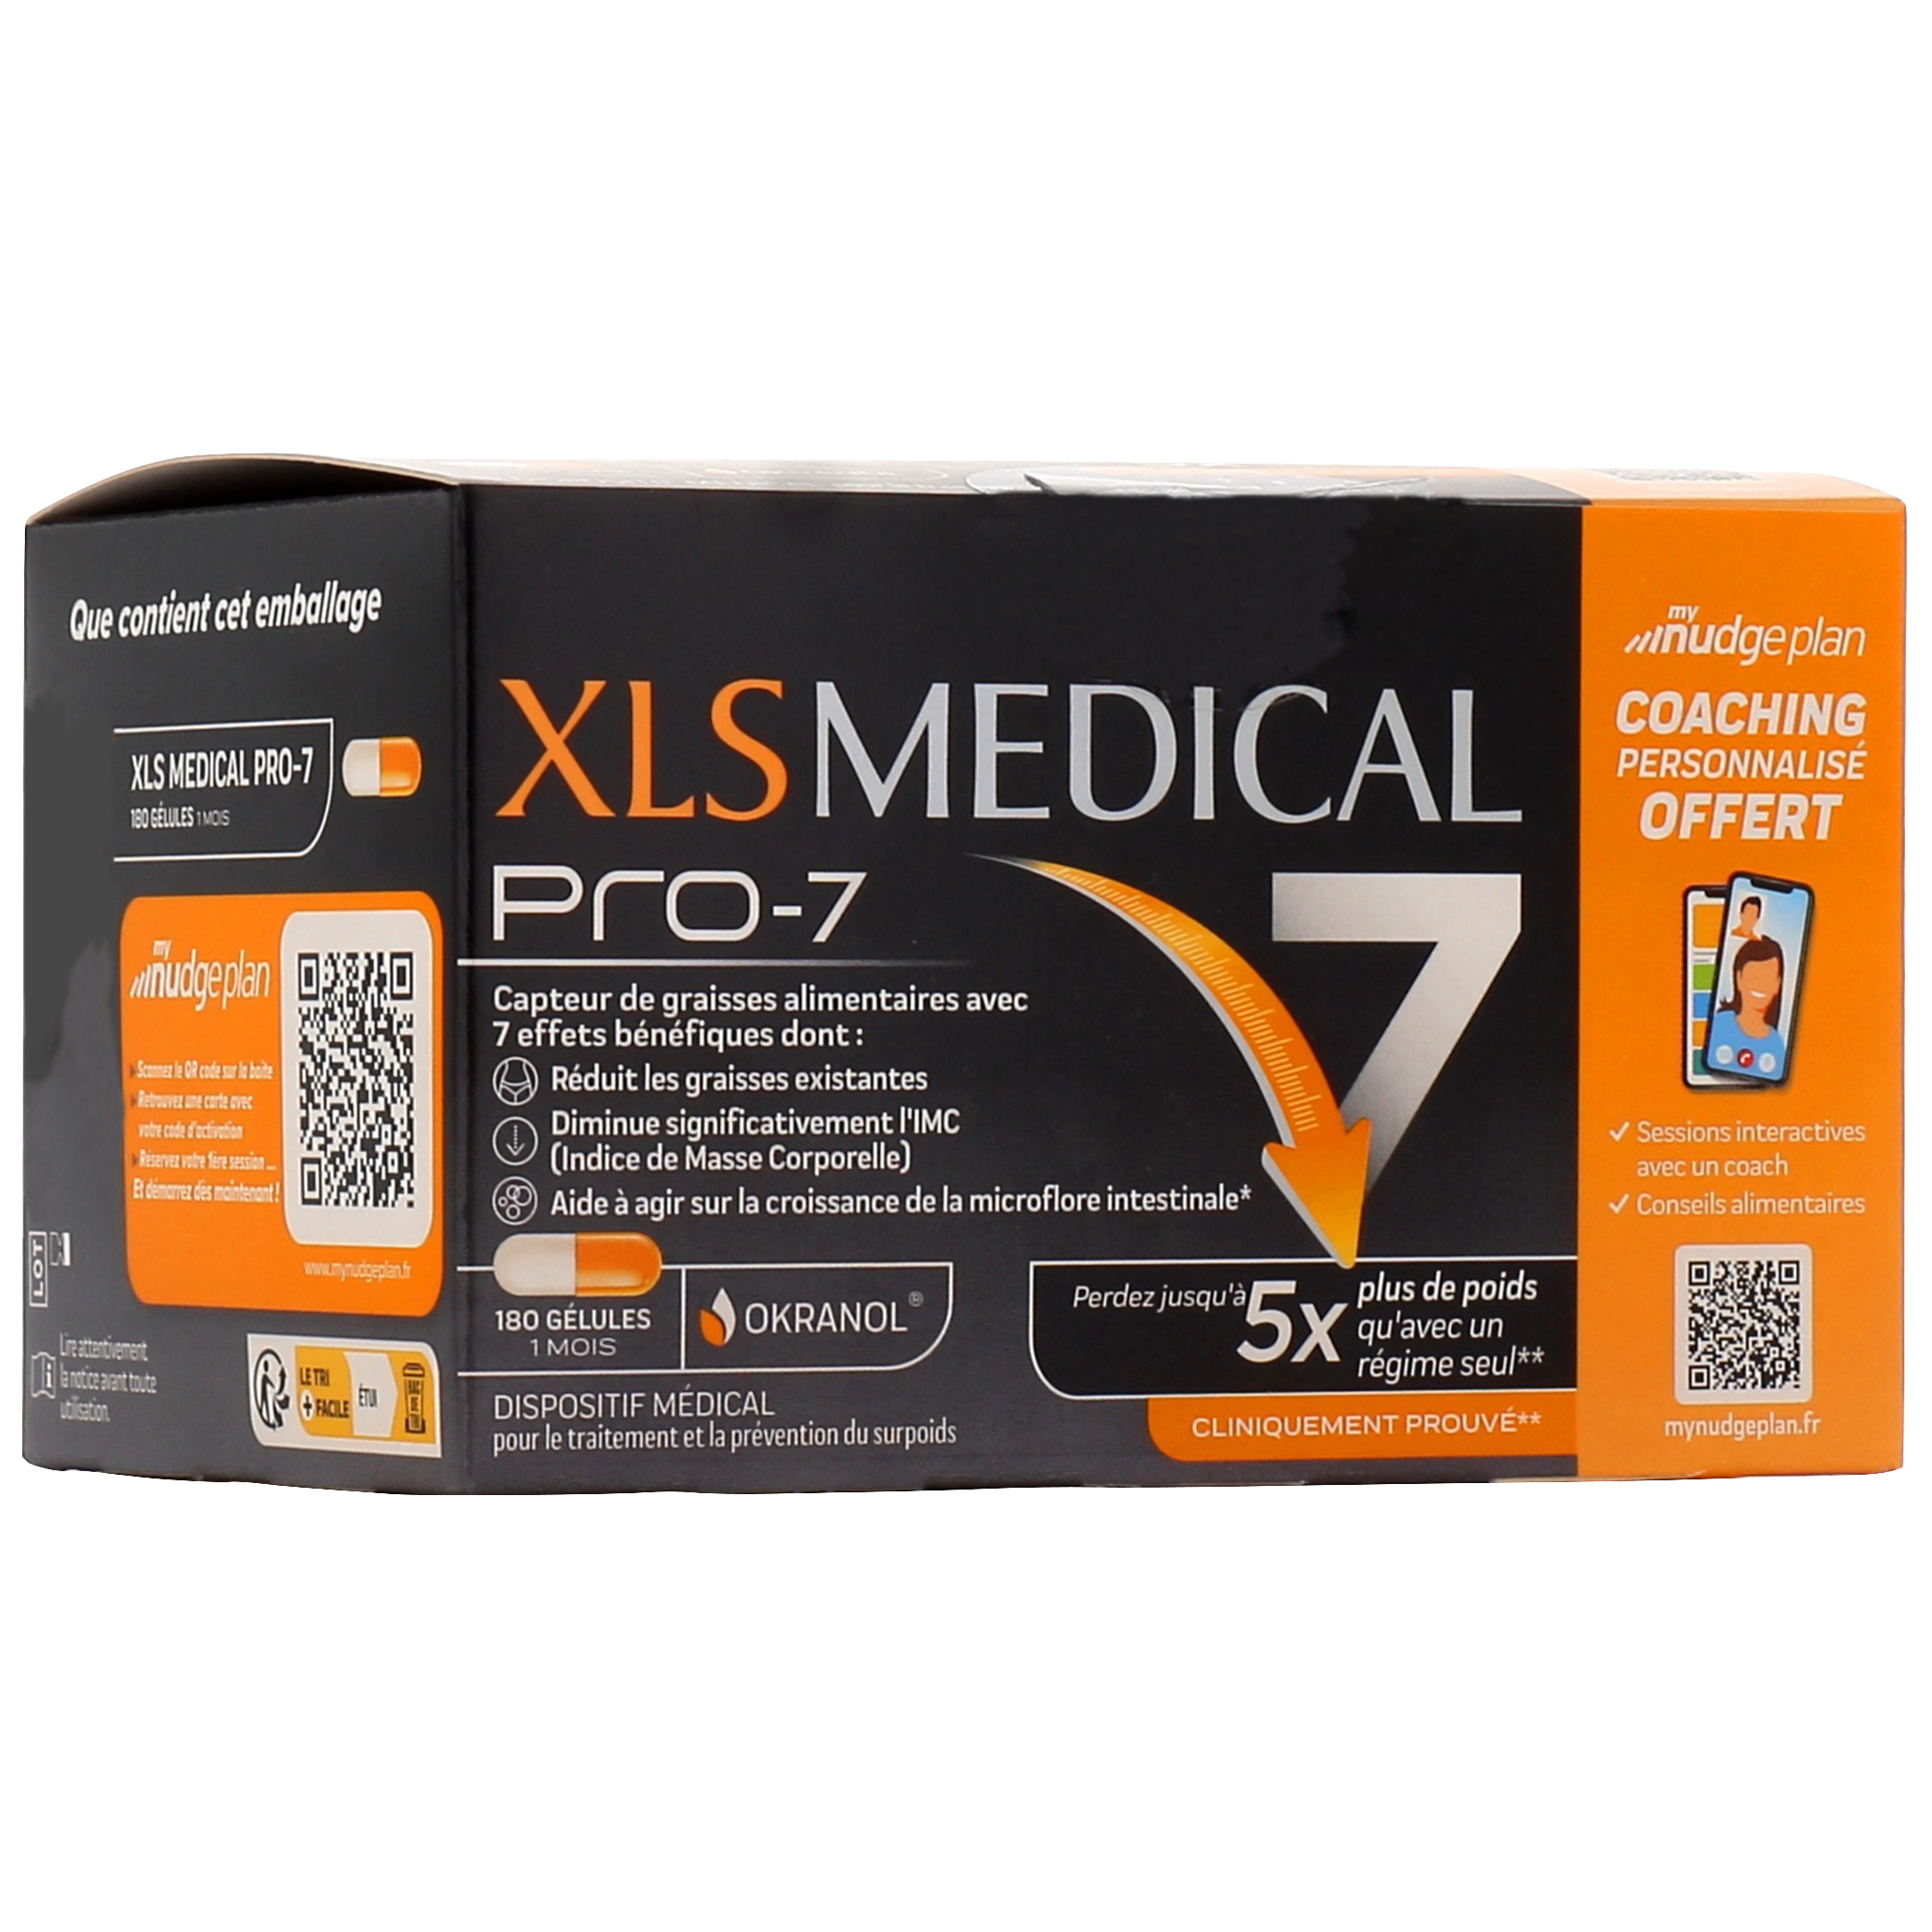 XLS Medical Pro 7 avis : que valent ces gélules minceur ?